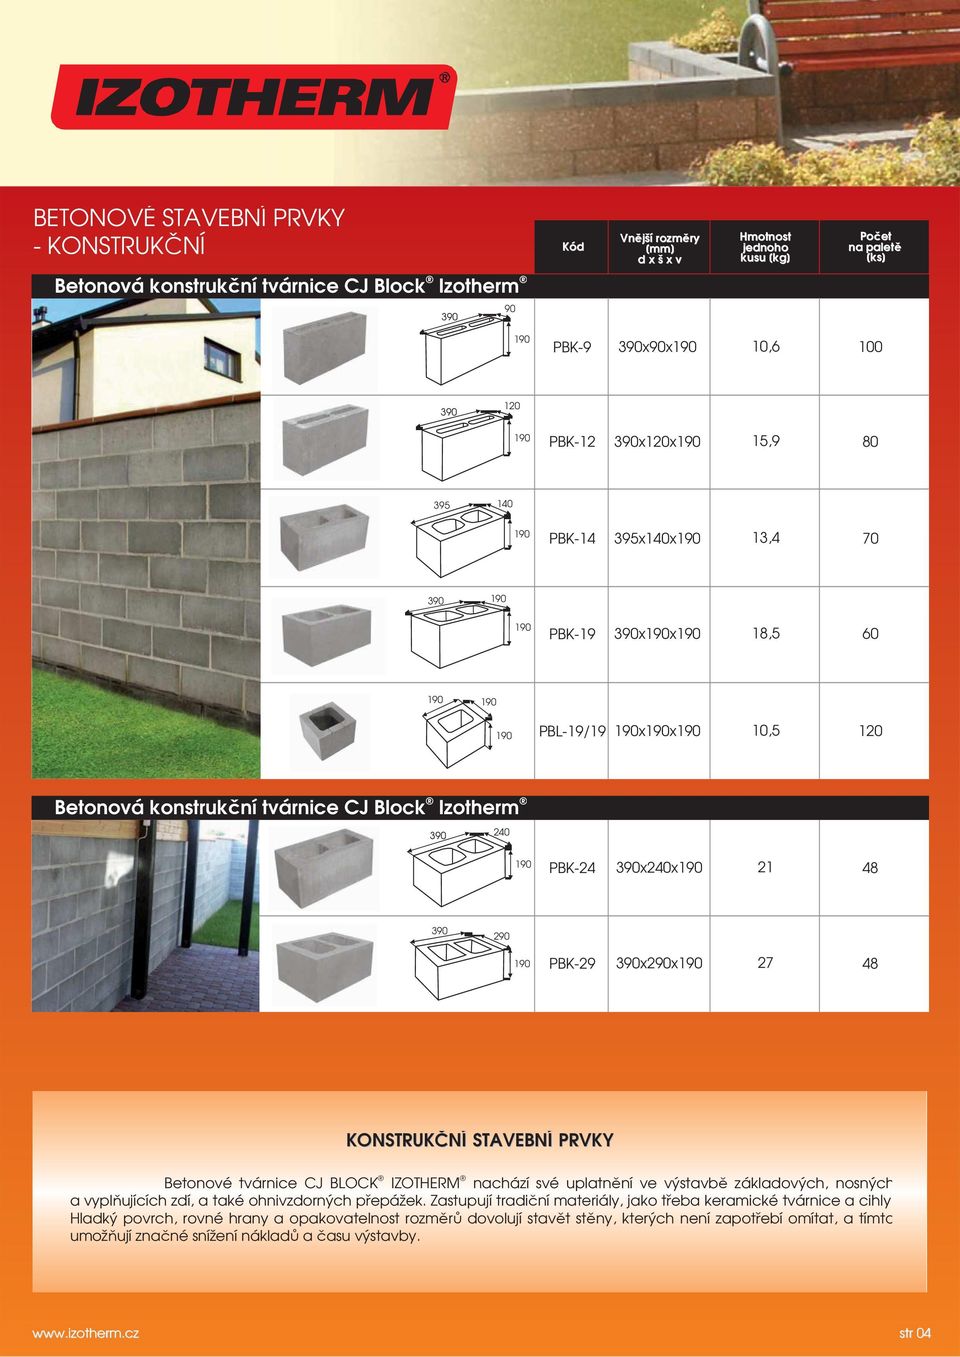 Betonové tvárnice CJ BLOCK IZOTHERM nachází své uplatnění ve výstavbě základových, nosných a vyplňujících zdí, a také ohnivzdorných přepážek.